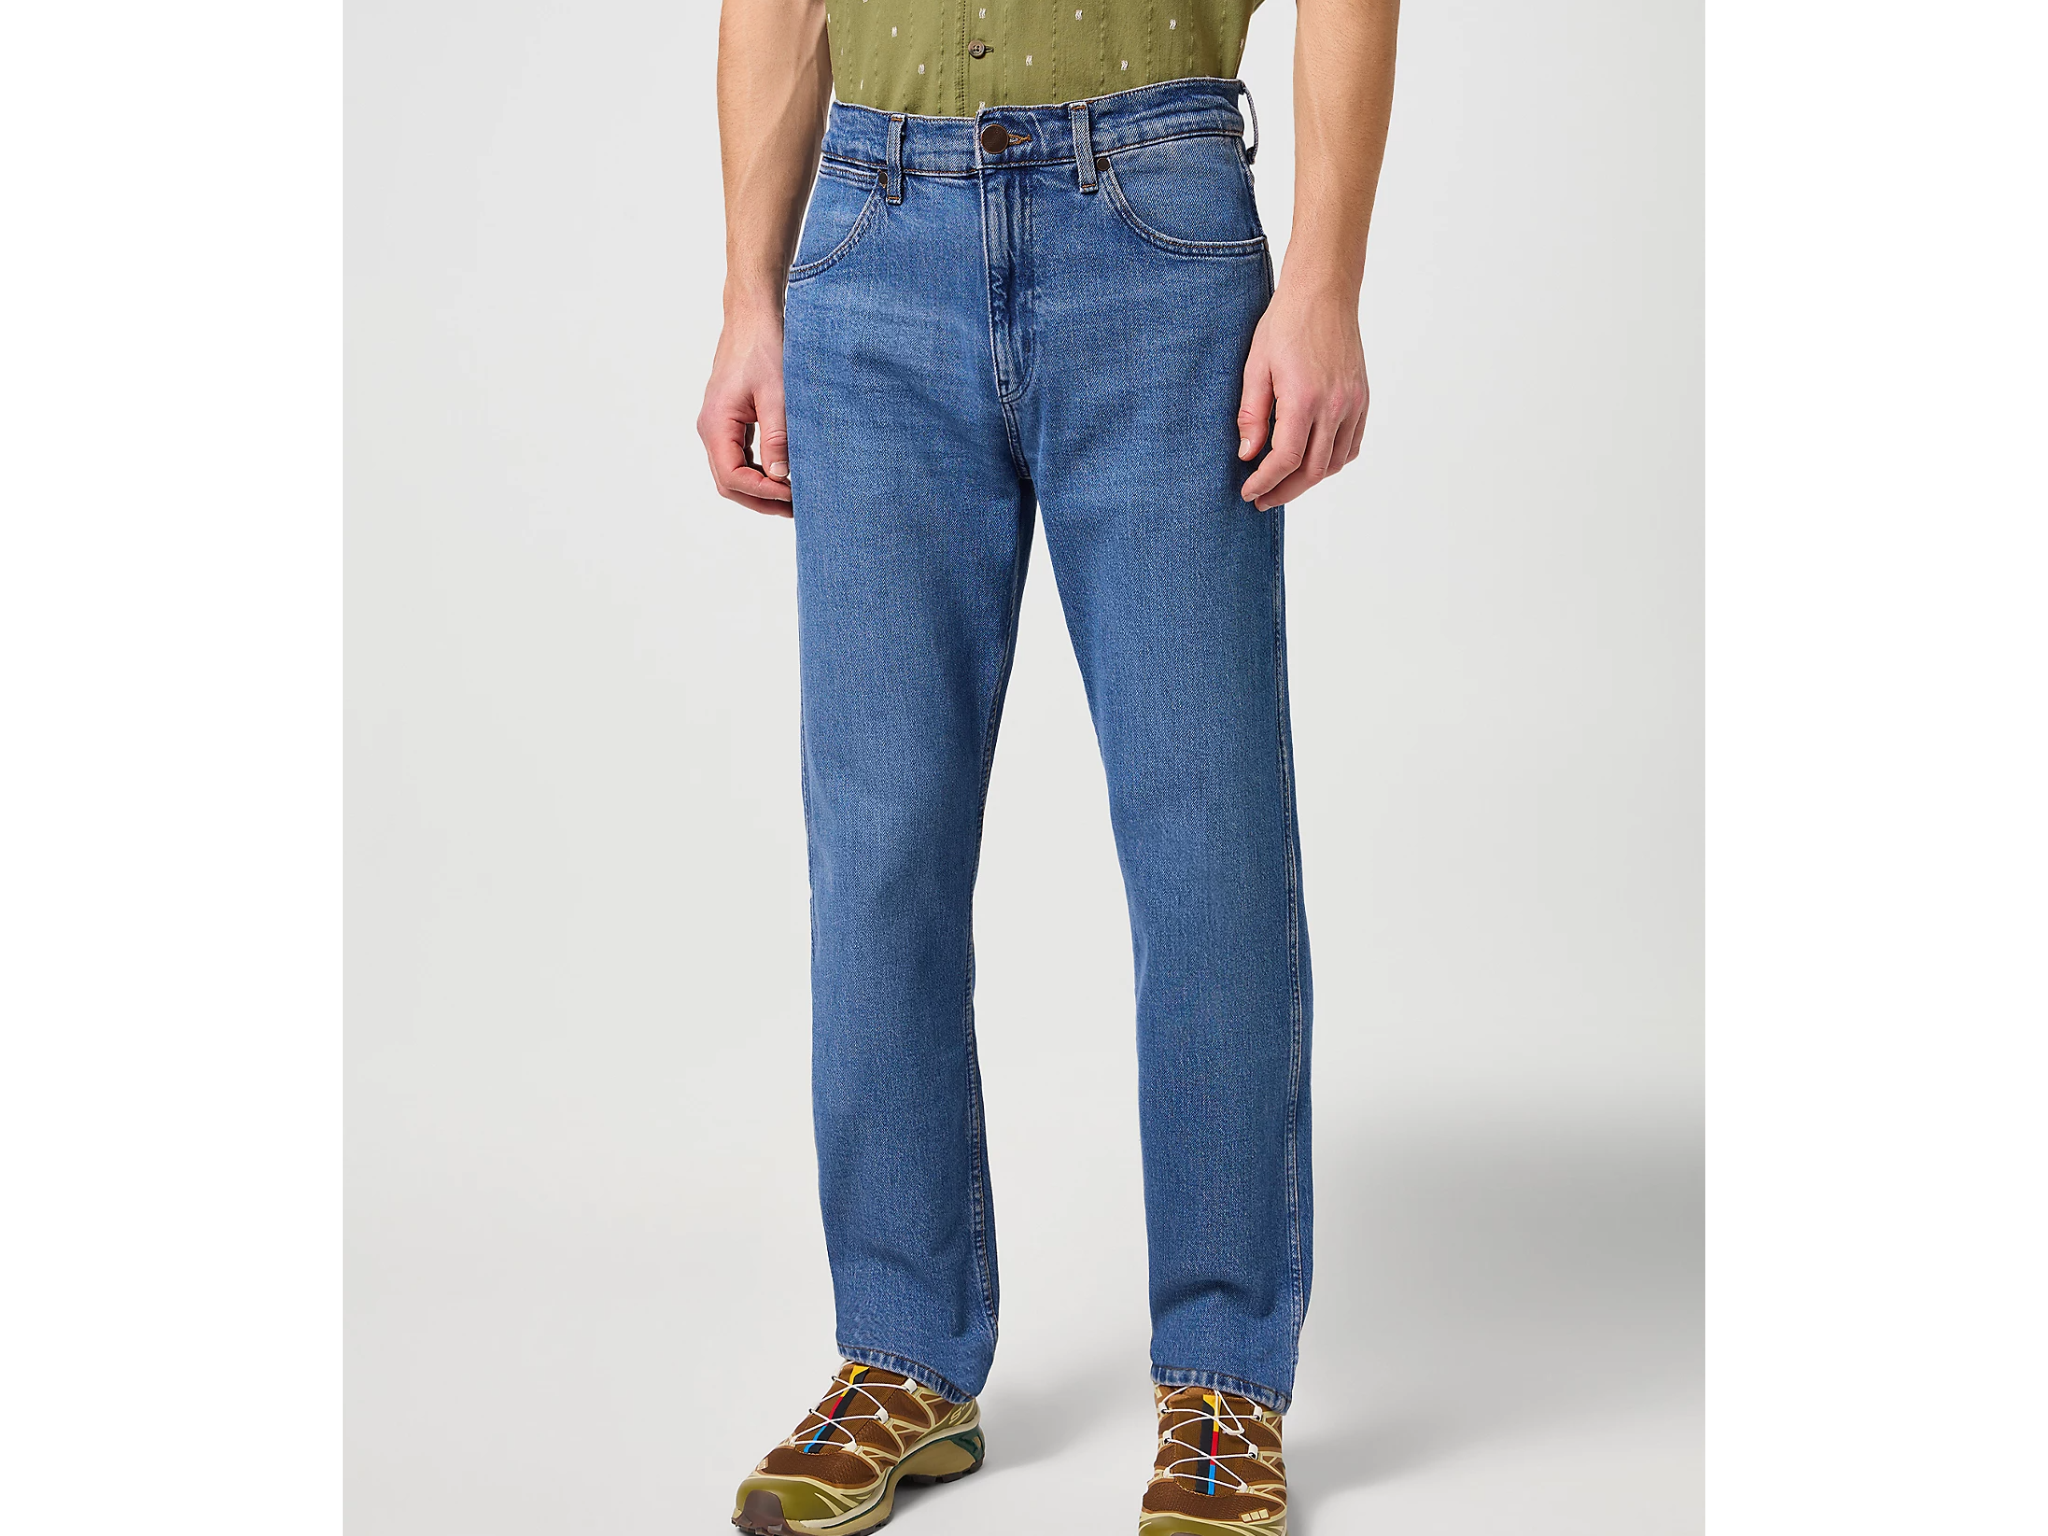 Wrangler frontier jeans